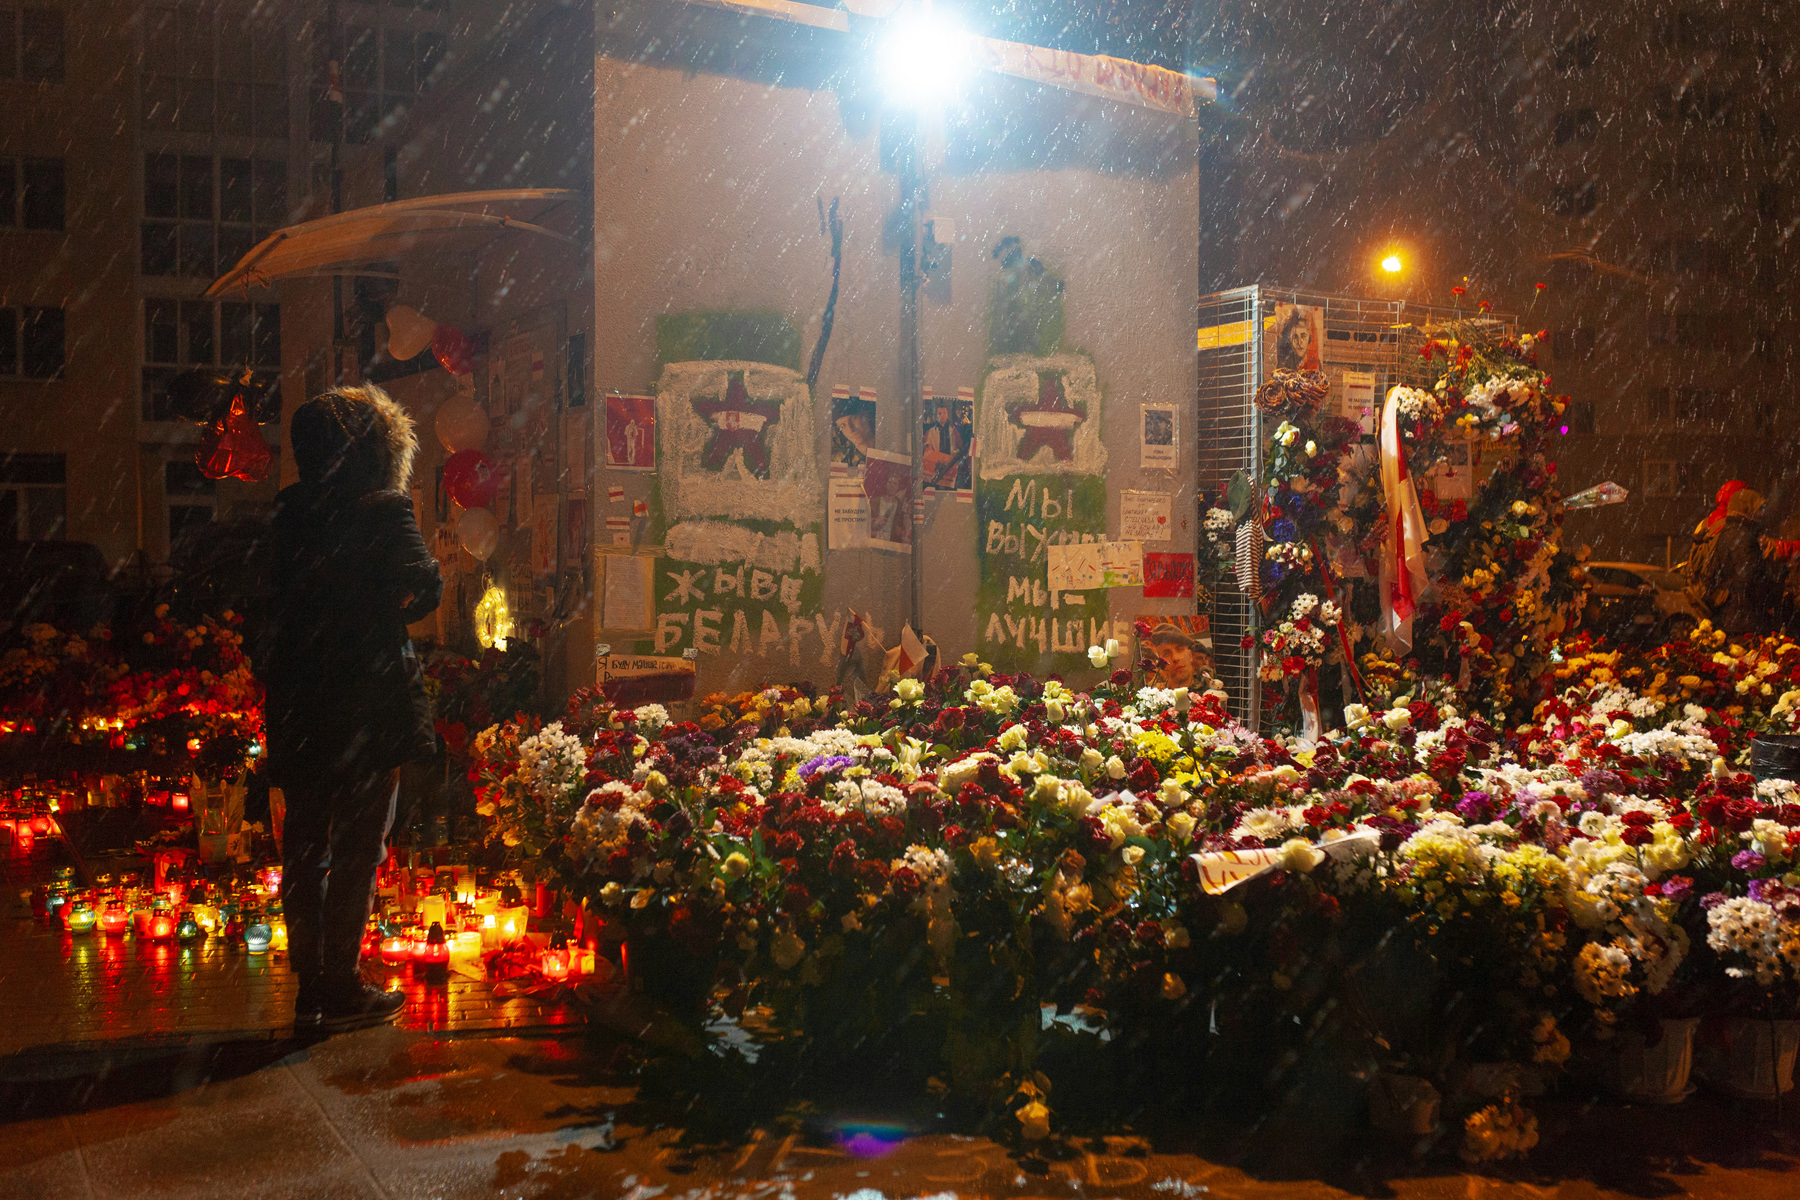 Год назад на Площади Перемен появился мурал с Диджеями. Евгений Отцецкий снял жизнь двора, ставшего символом протеста